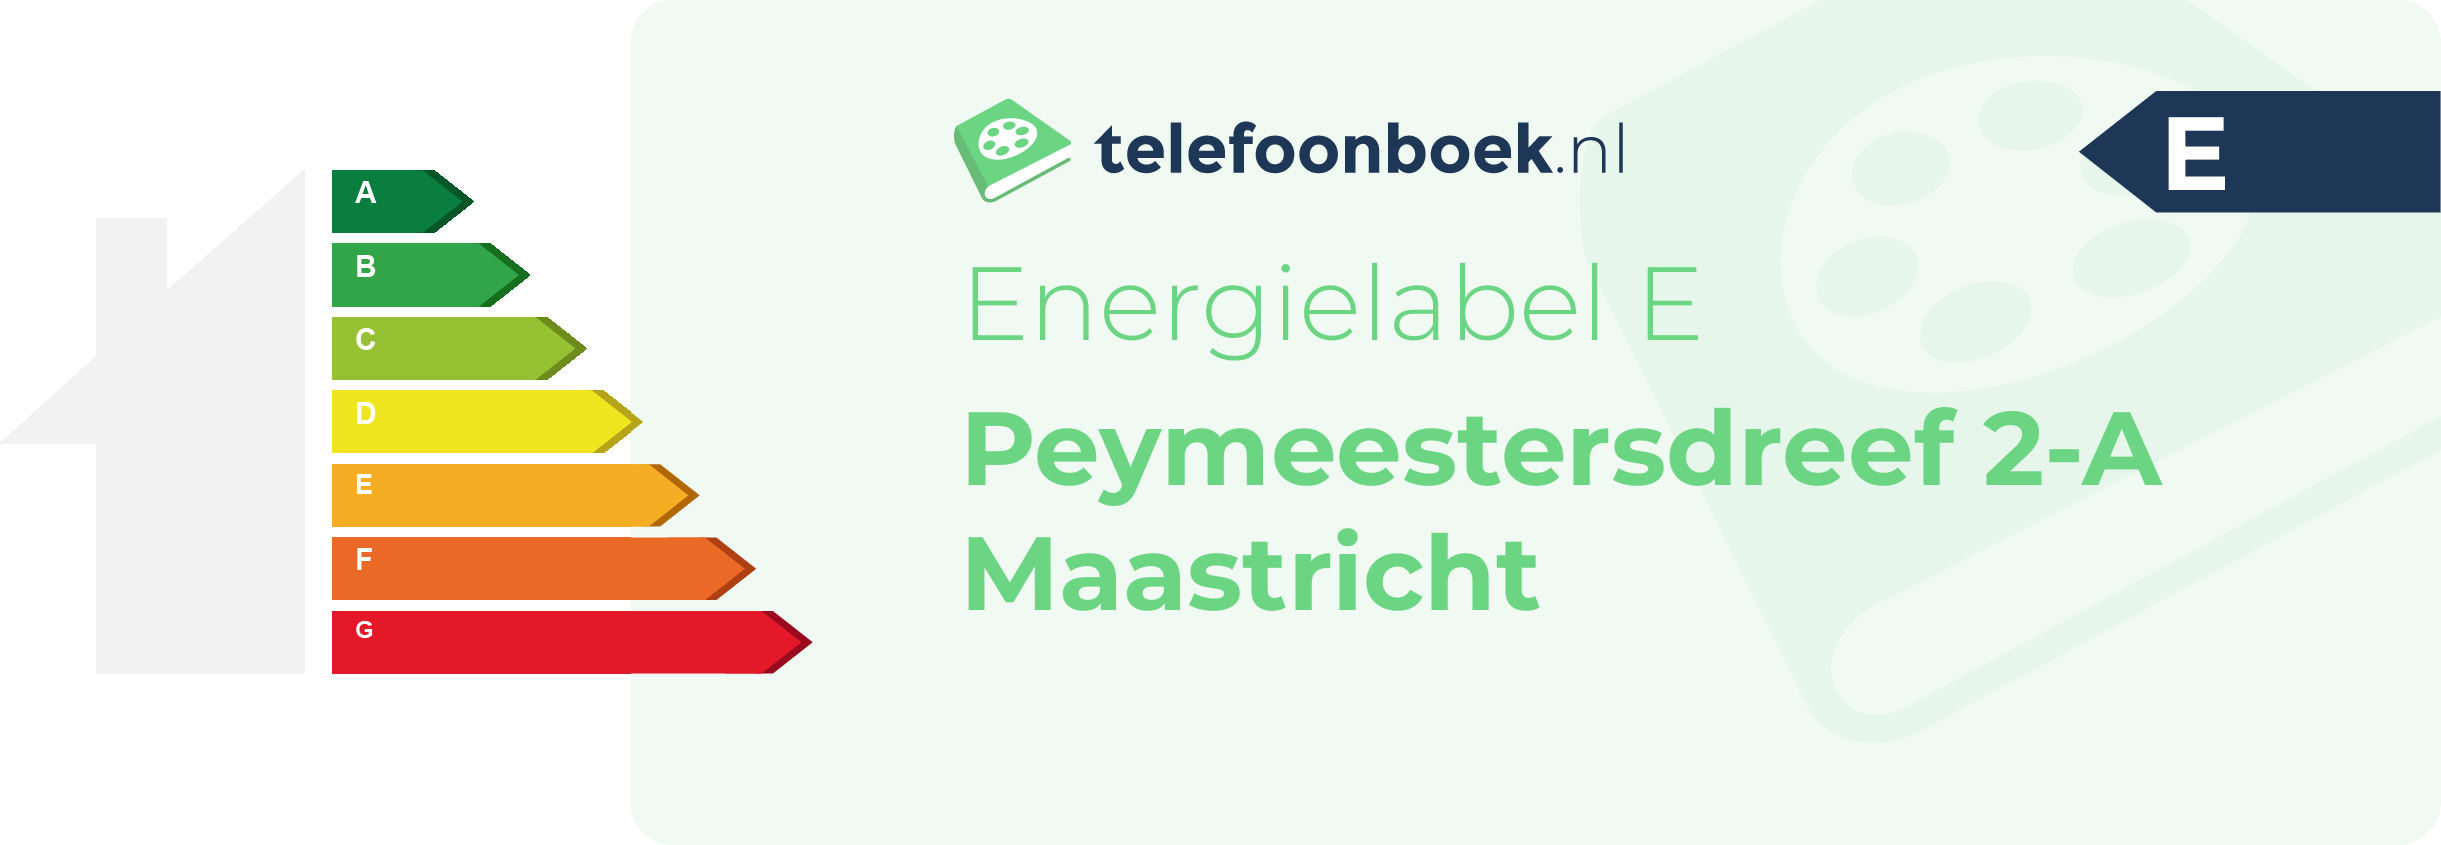 Energielabel Peymeestersdreef 2-A Maastricht